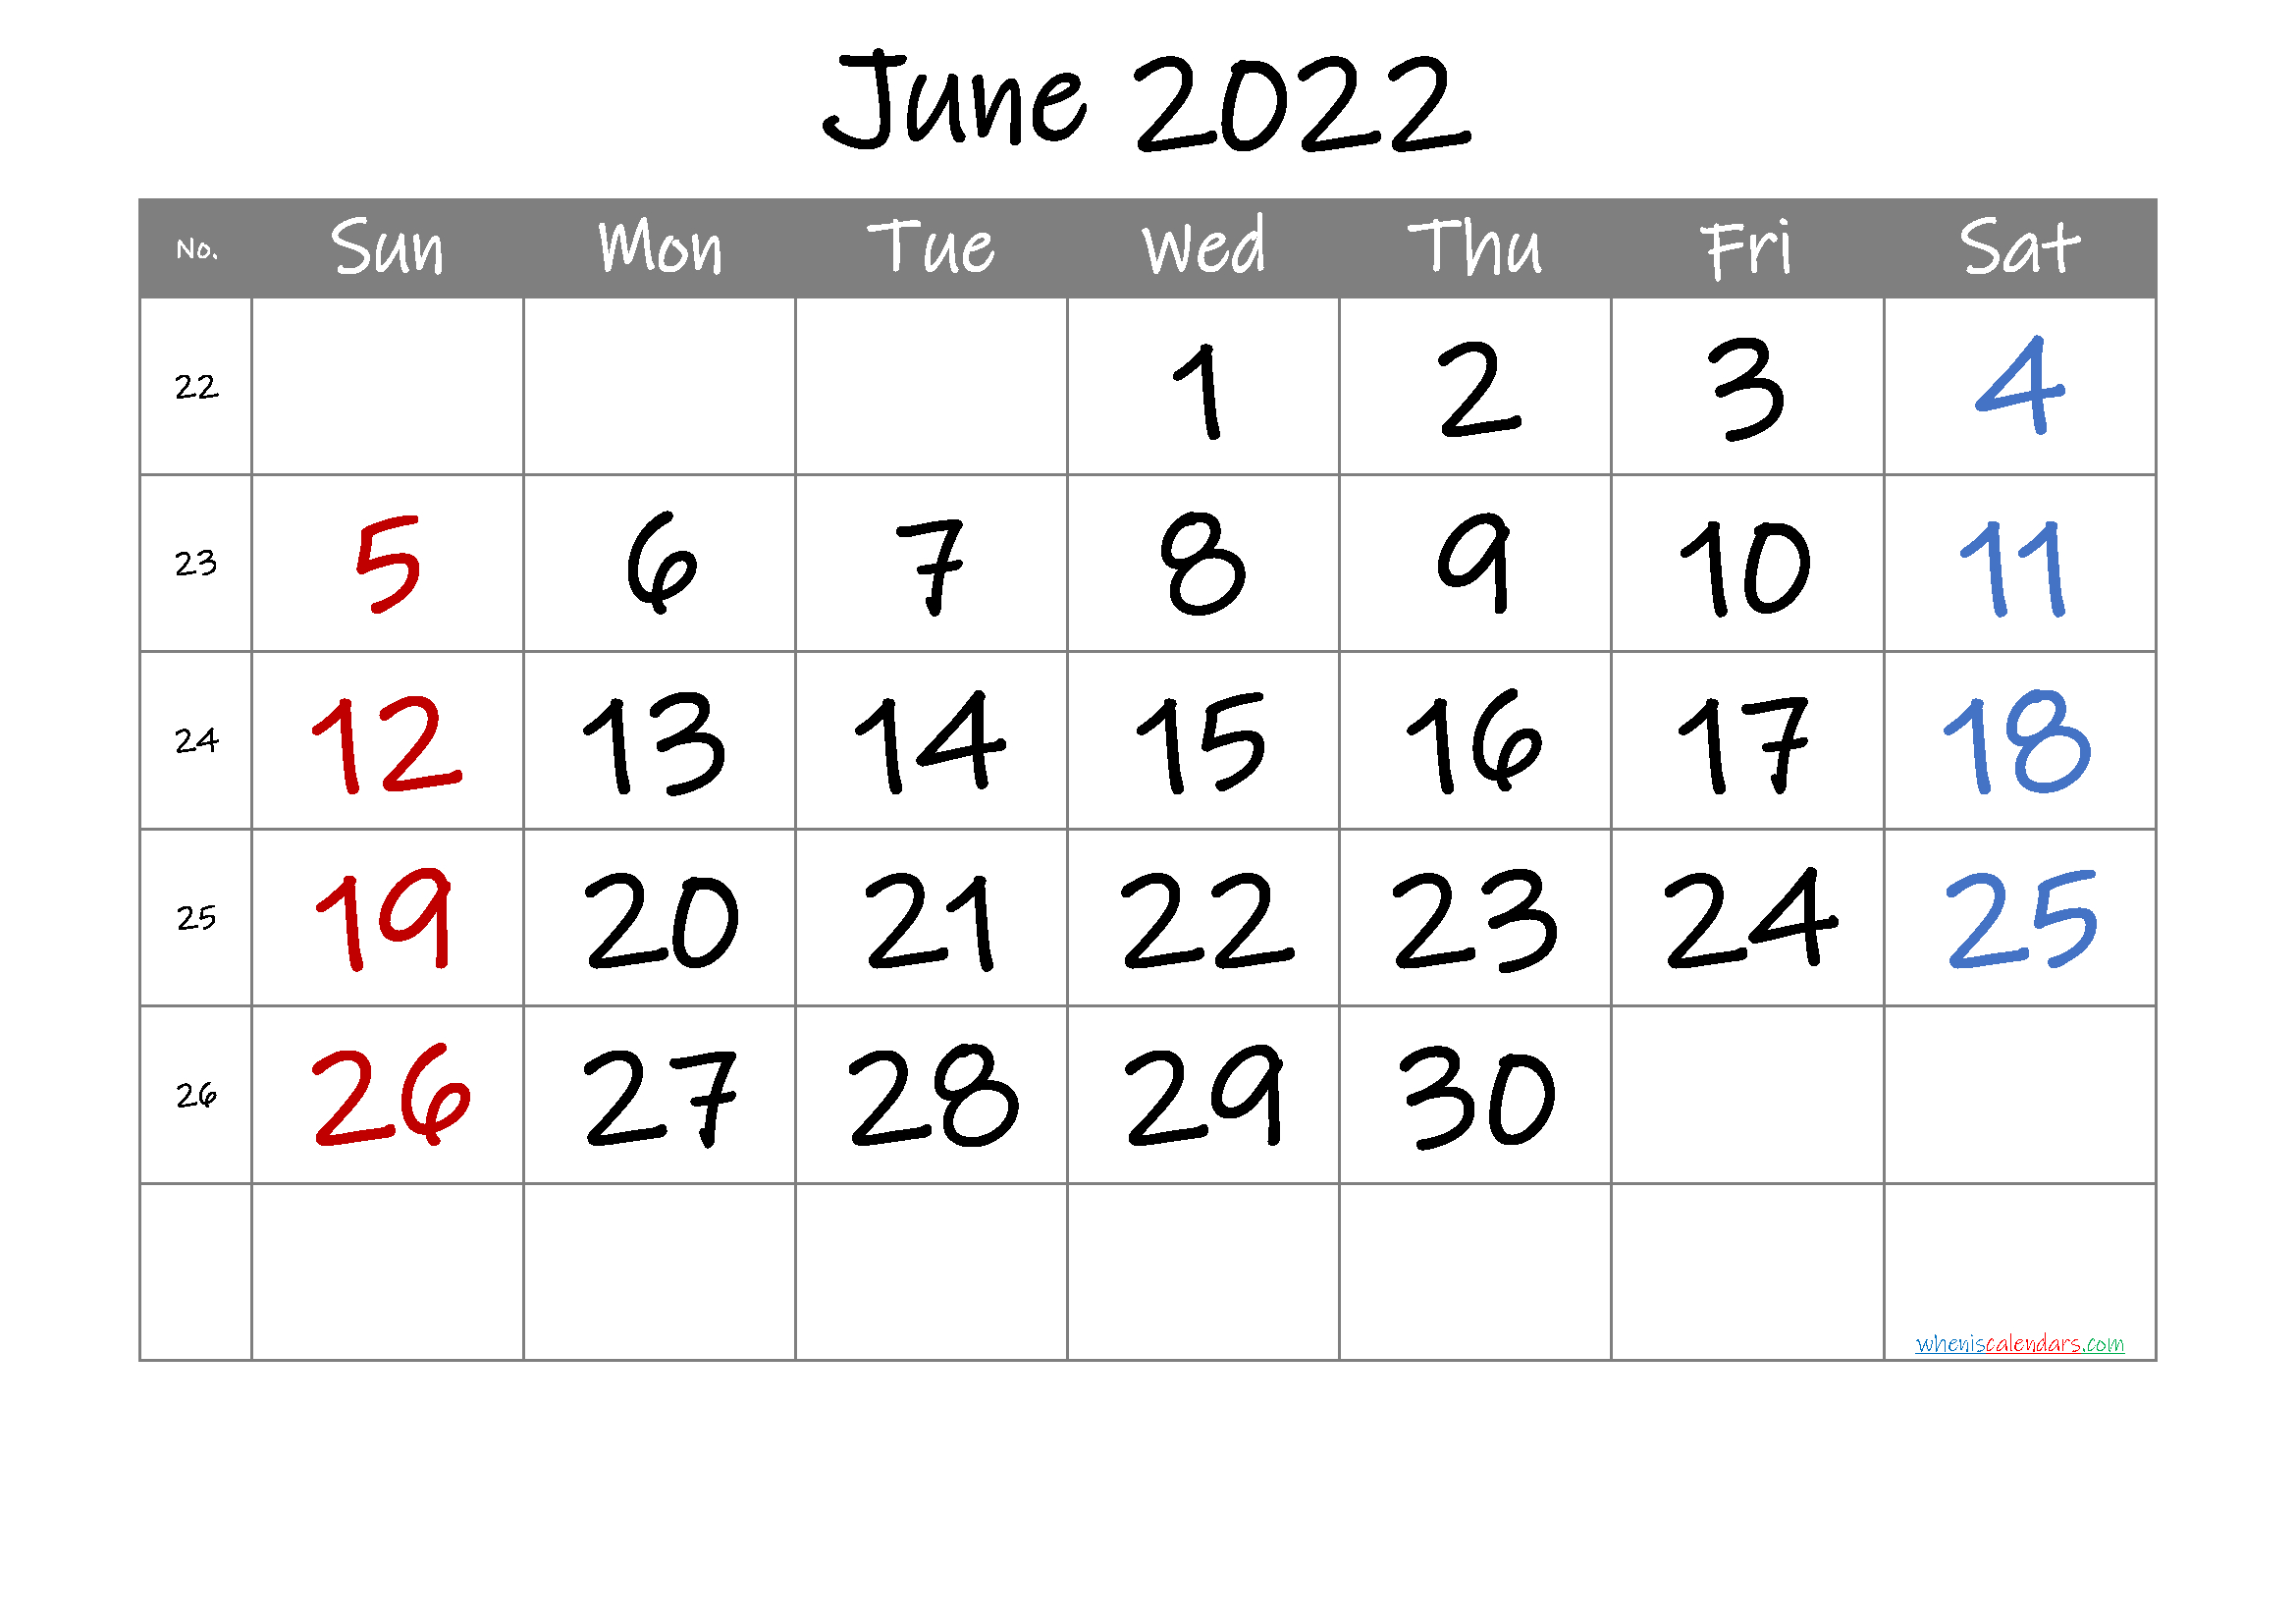 Take June 2022 Calendar Image